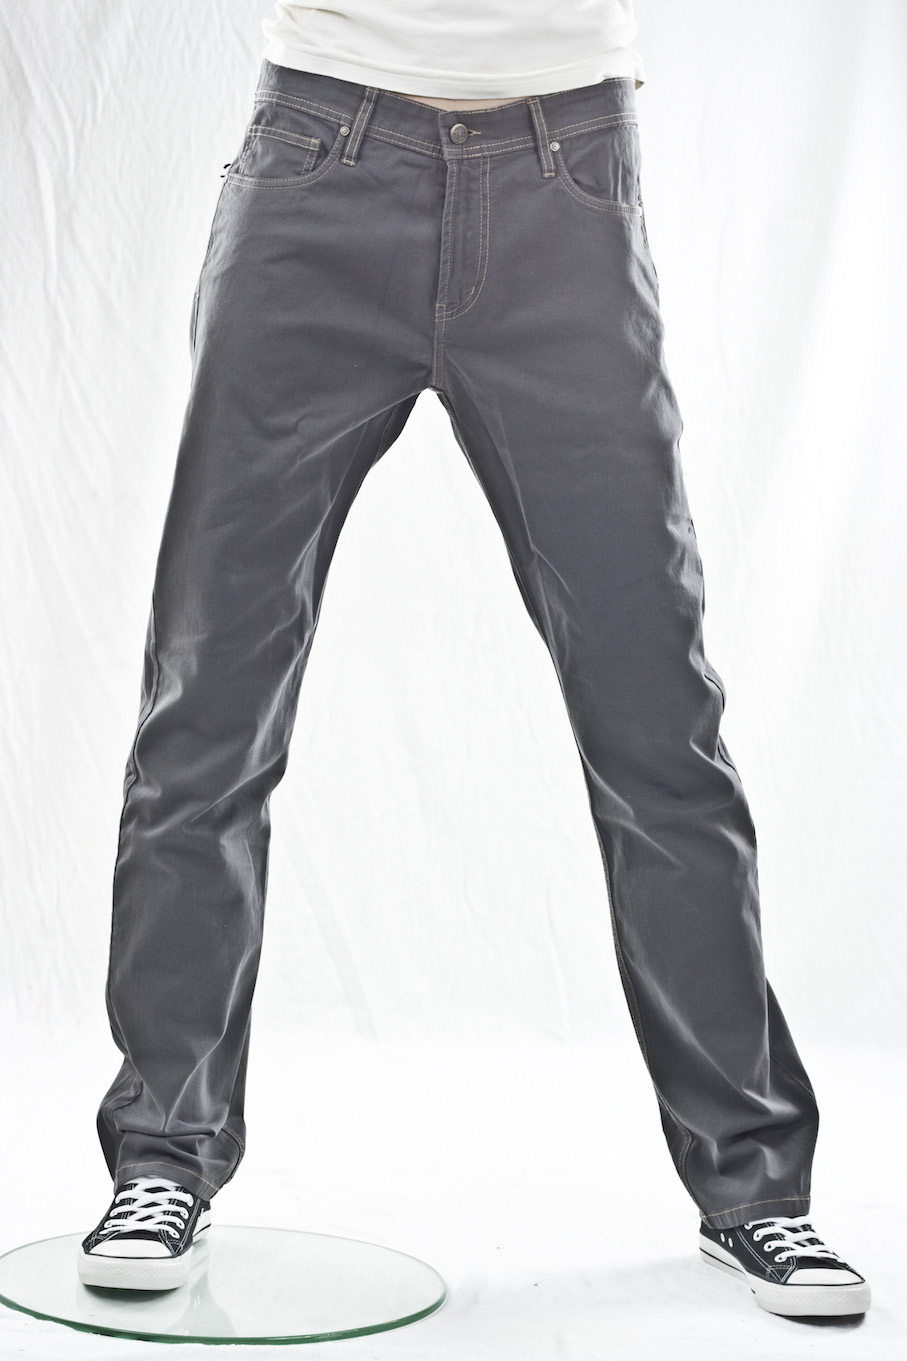 джинсы мужские Bugatchi "прямые" straight mens jeans grey style